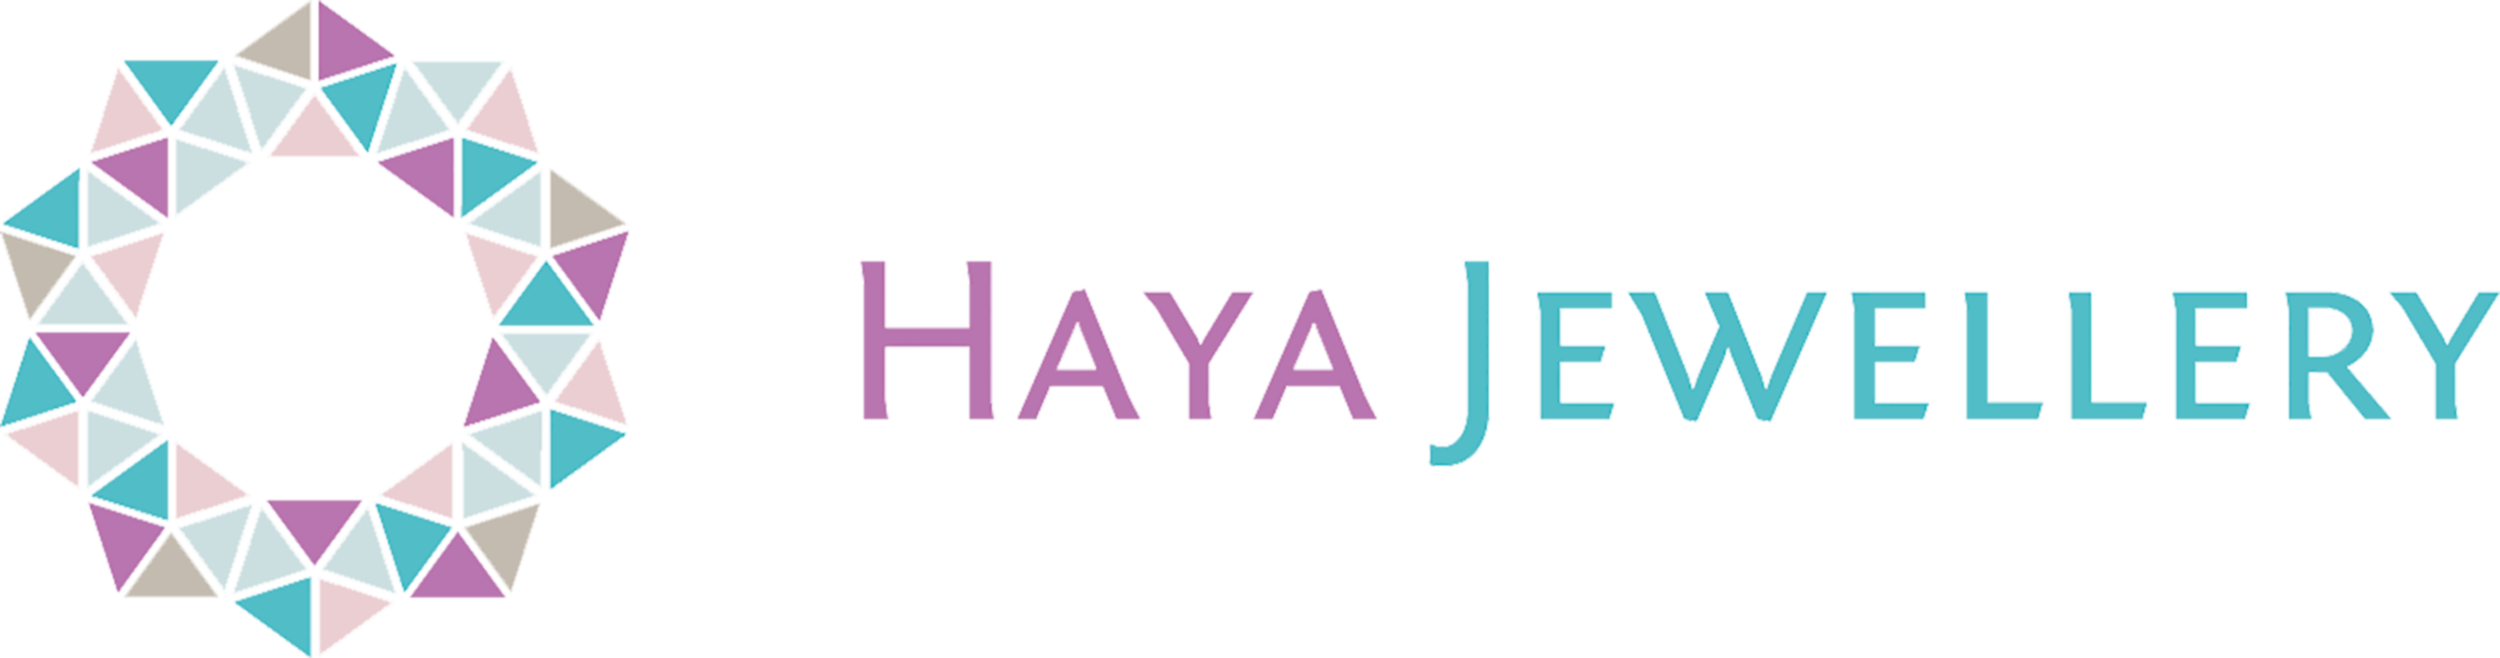 haya_logo_colour Kopie2.png